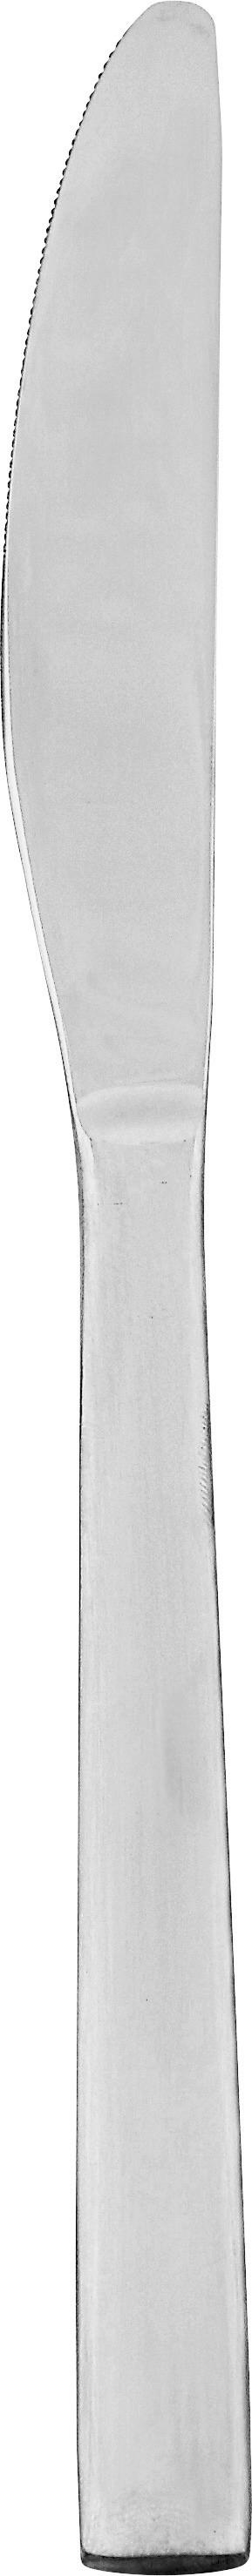 Messer Jesko 2er-Set L: ca. 22,8 cm - Edelstahlfarben, ROMANTIK / LANDHAUS, Metall (22,8cm) - James Wood